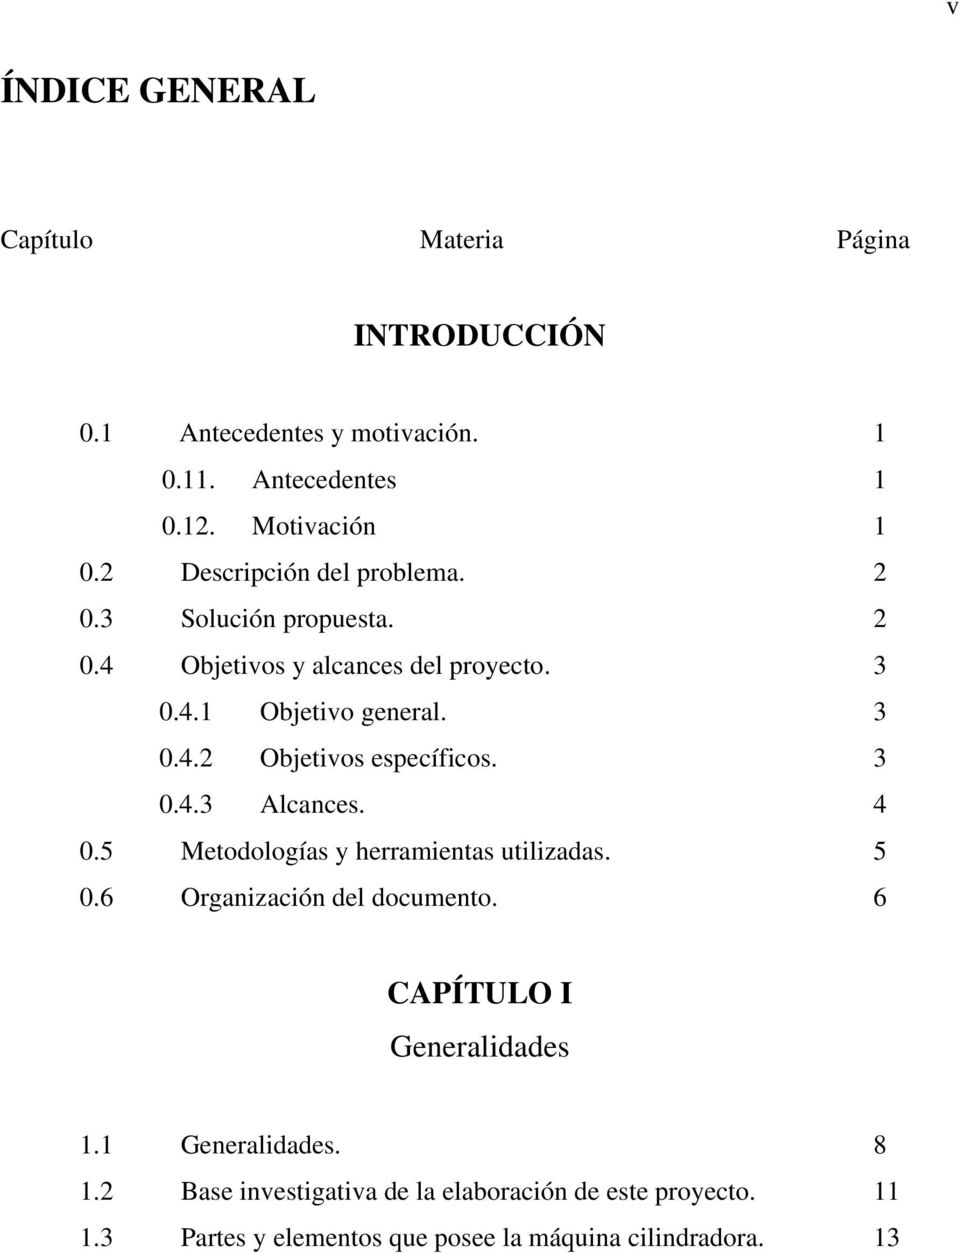 3 0.4.3 Alcances. 4 0.5 Metodologías y herramientas utilizadas. 5 0.6 Organización del documento. 6 CAPÍTULO I Generalidades 1.